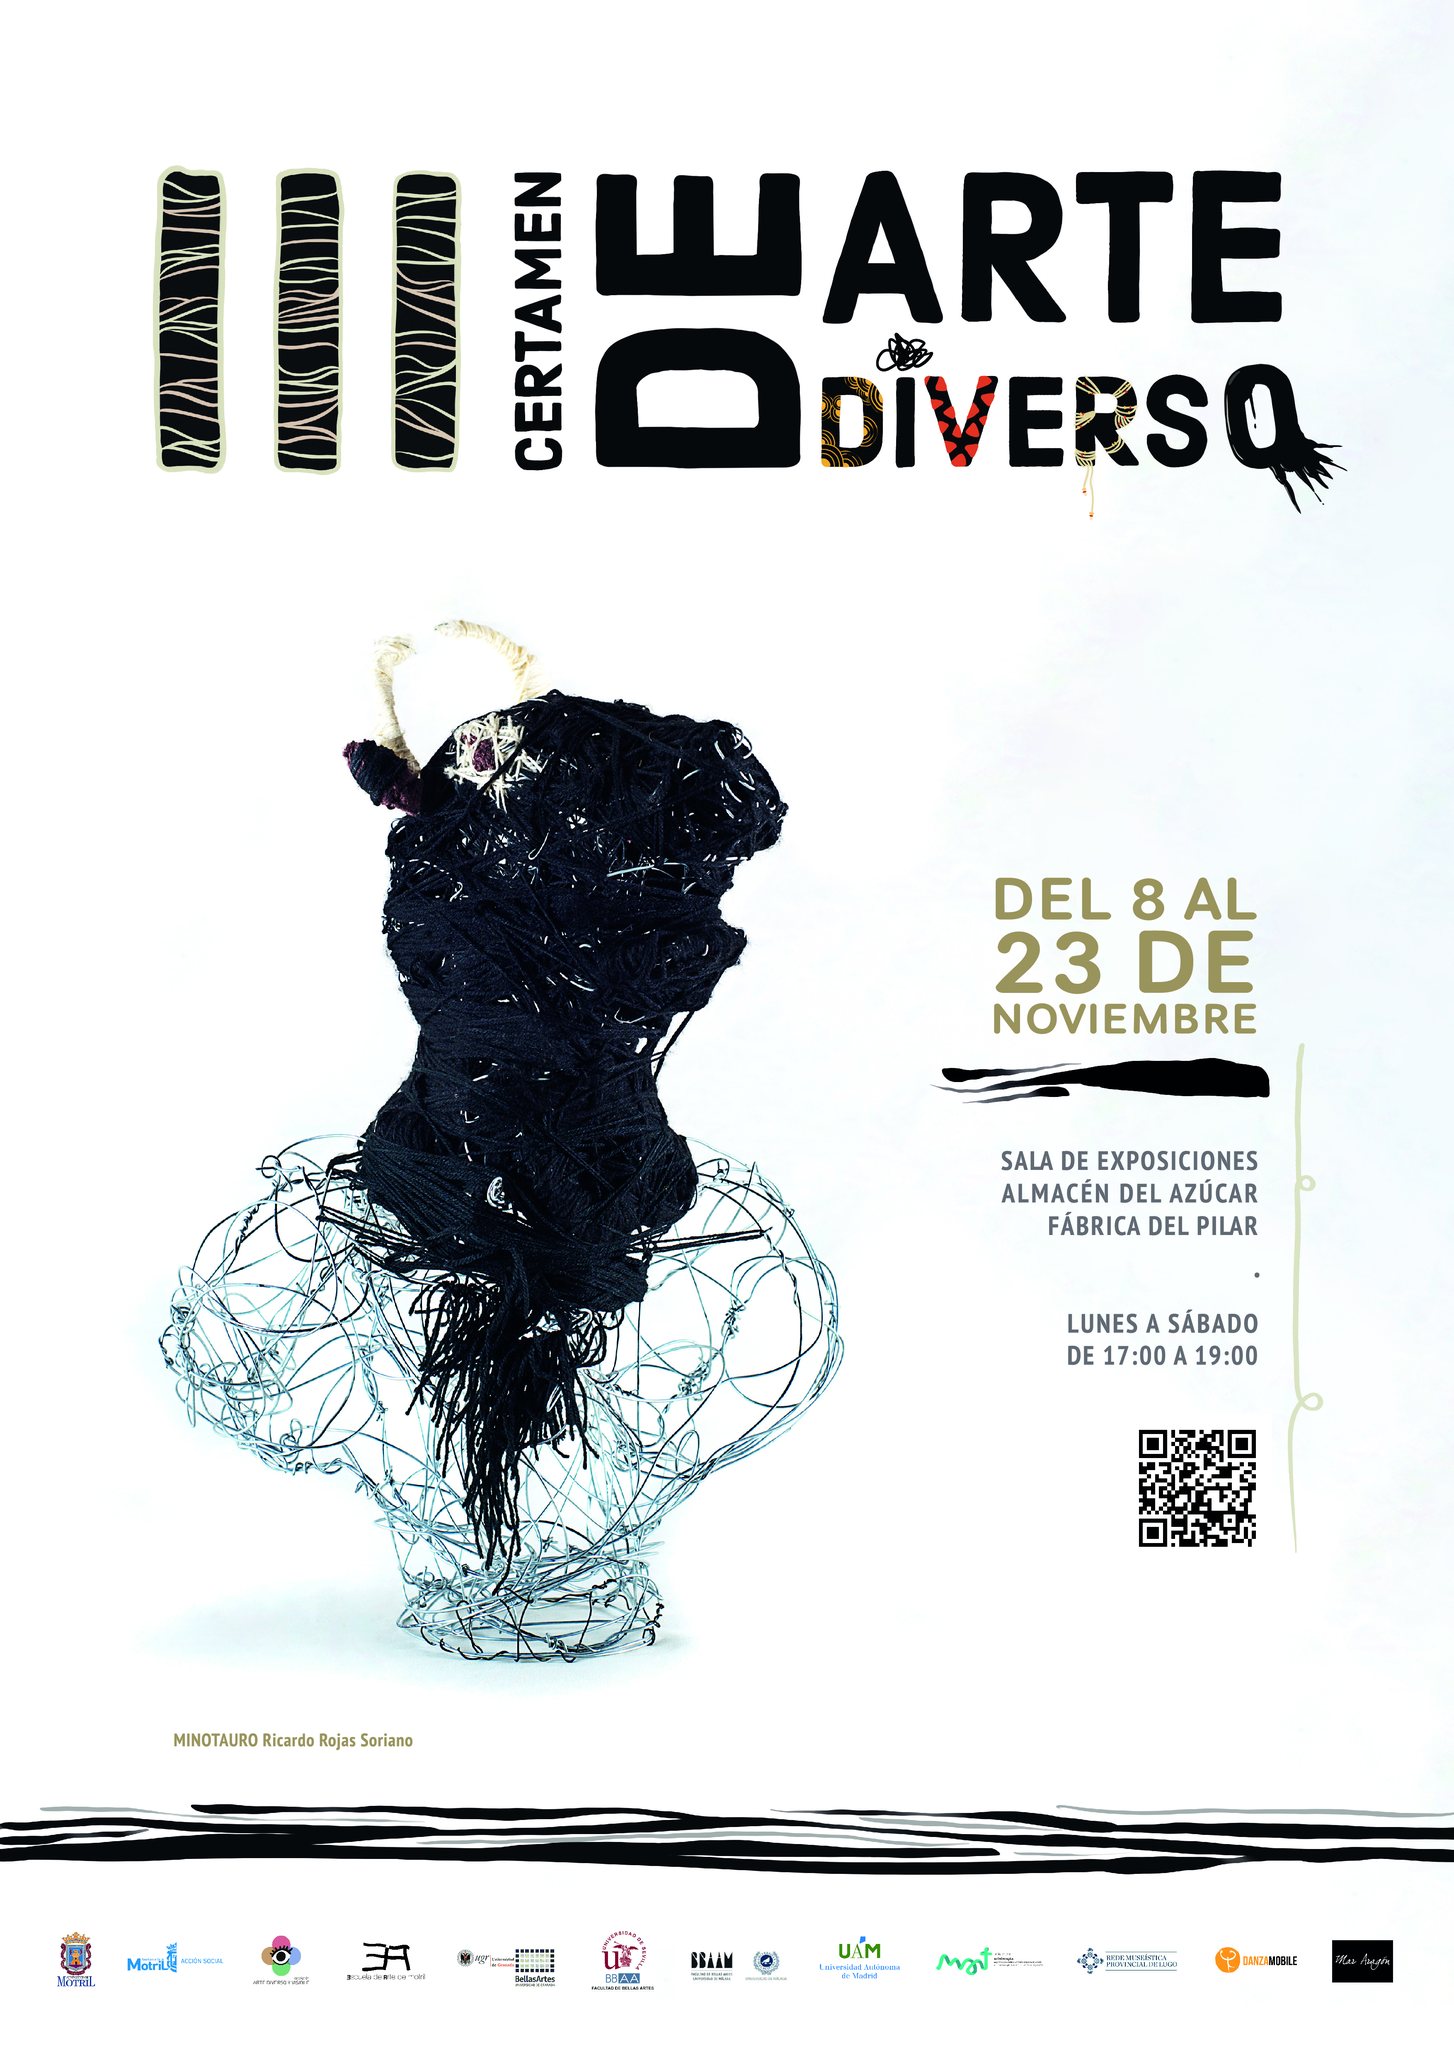 Una escultura de Ricardo Rojas ilustra el certamen de Arte Diverso de Motril